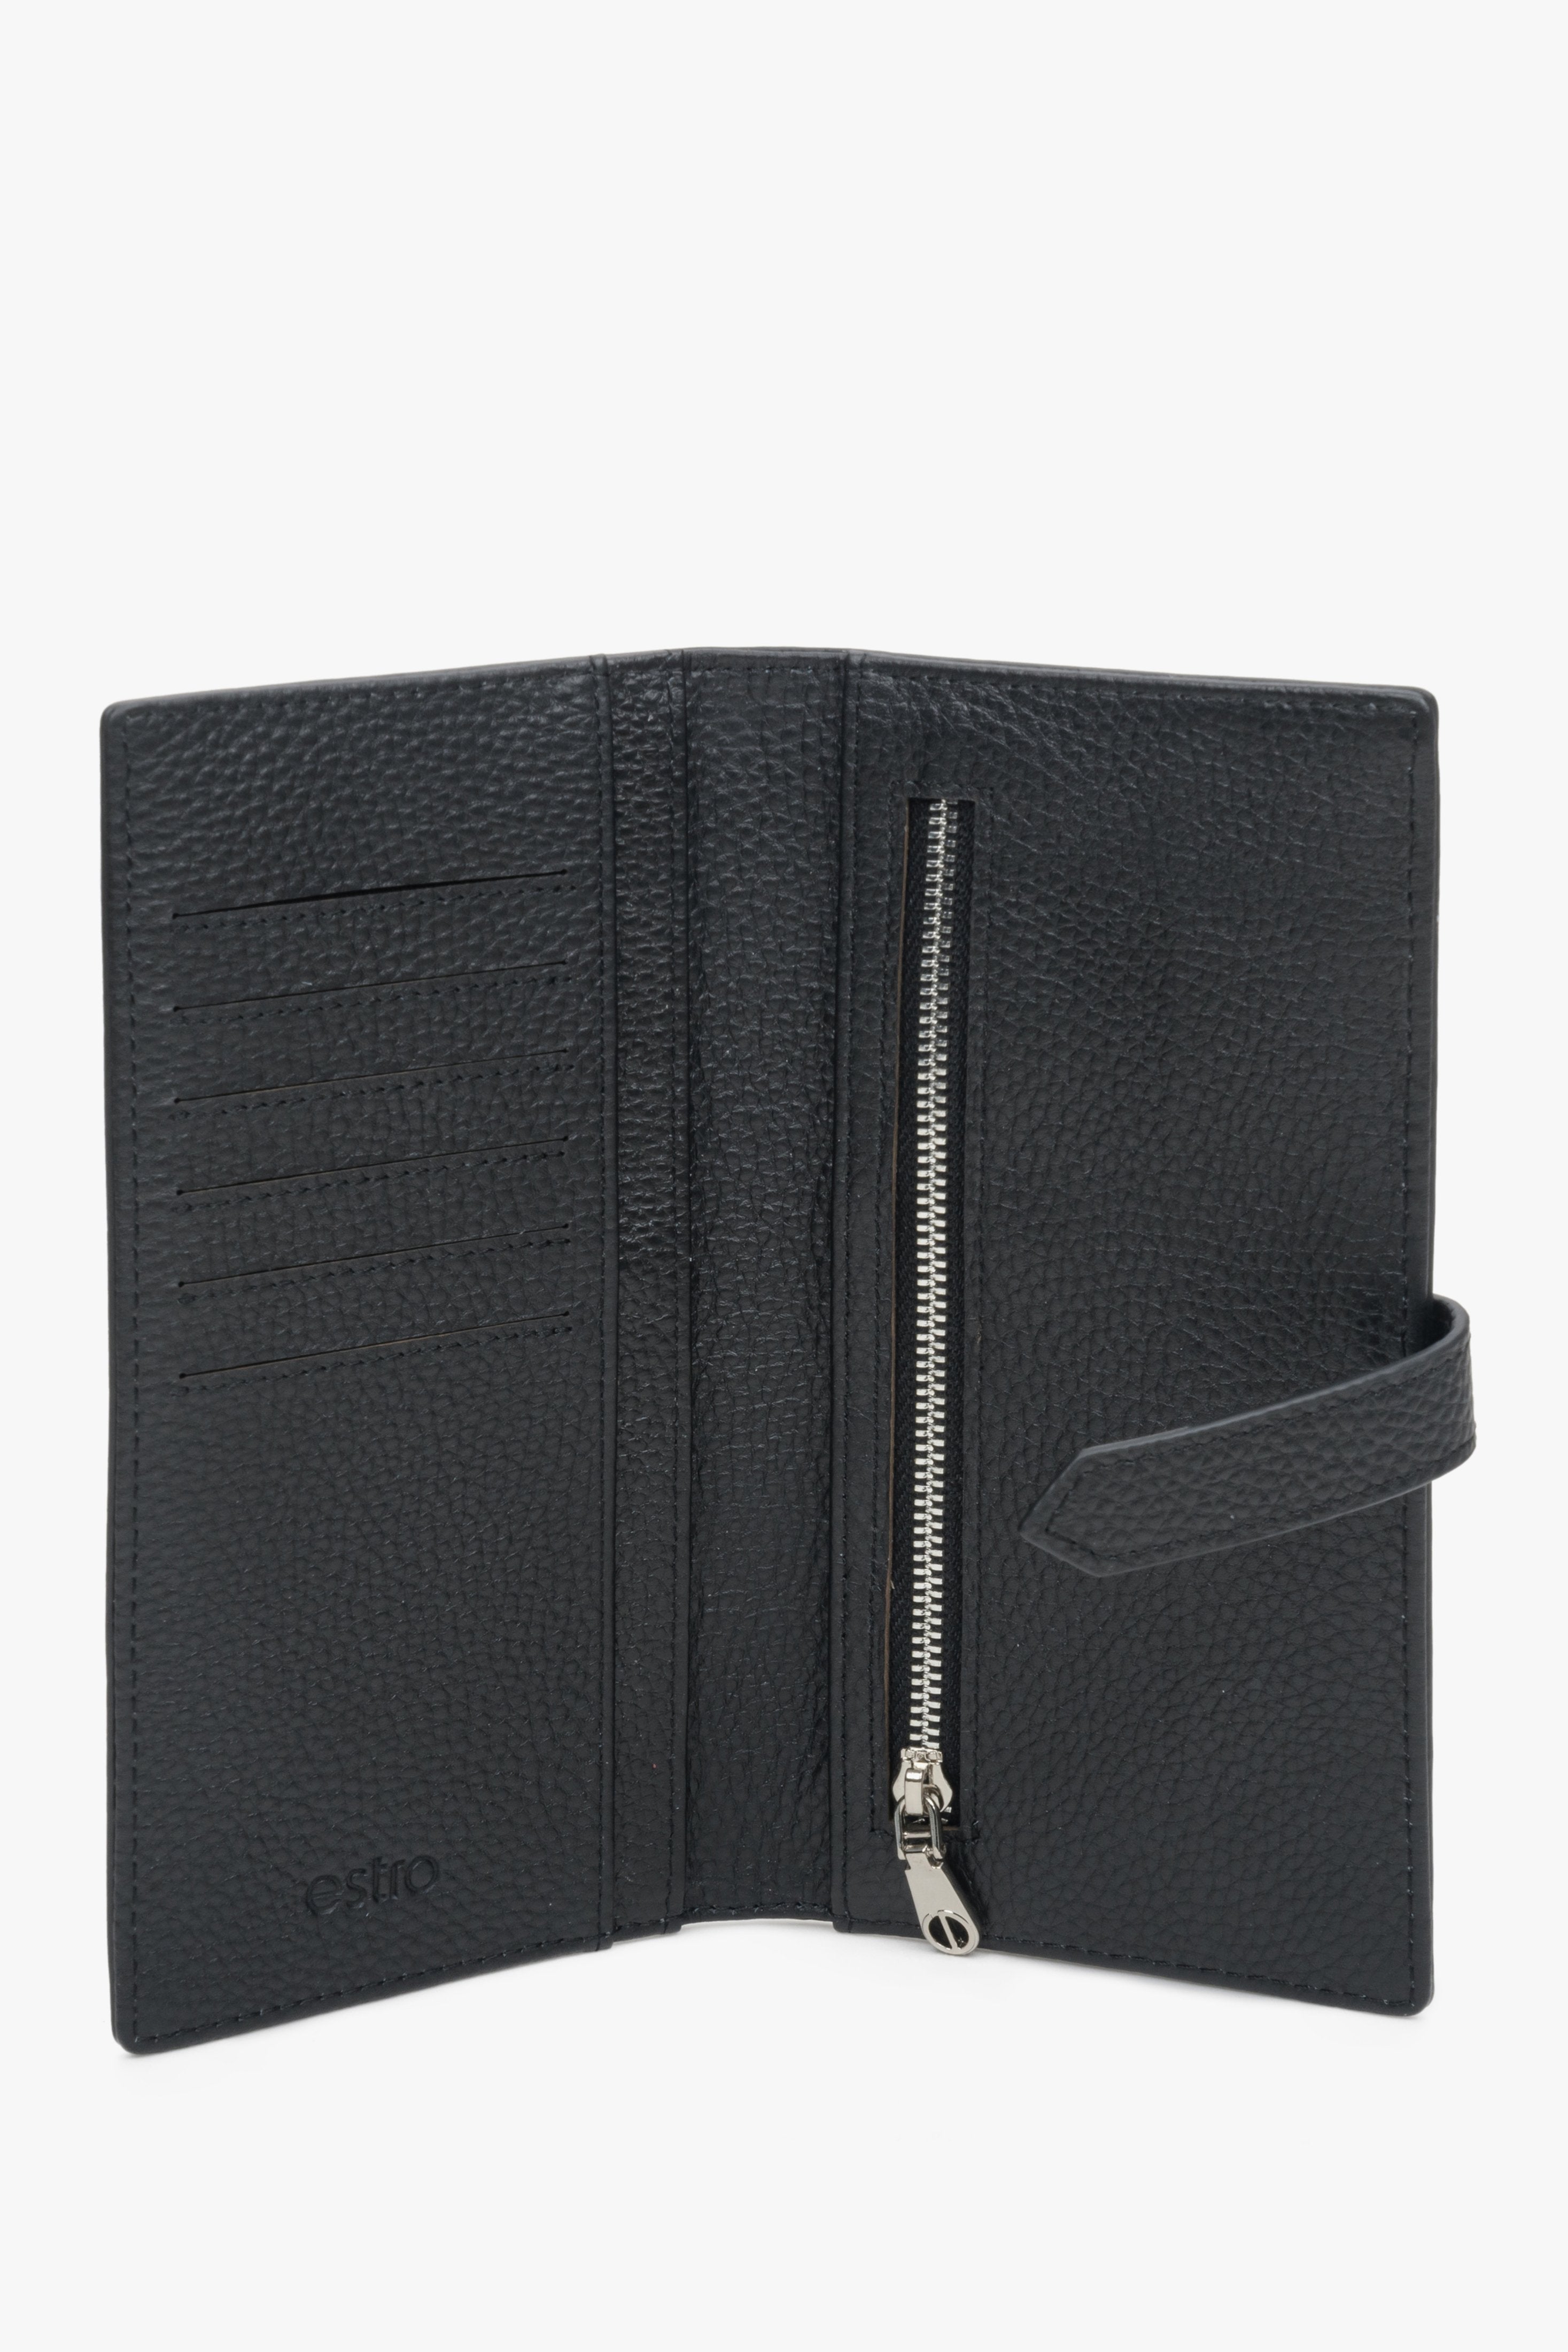 Duży, skórzany portfel damski czarny Estro - wnętrze modelu.